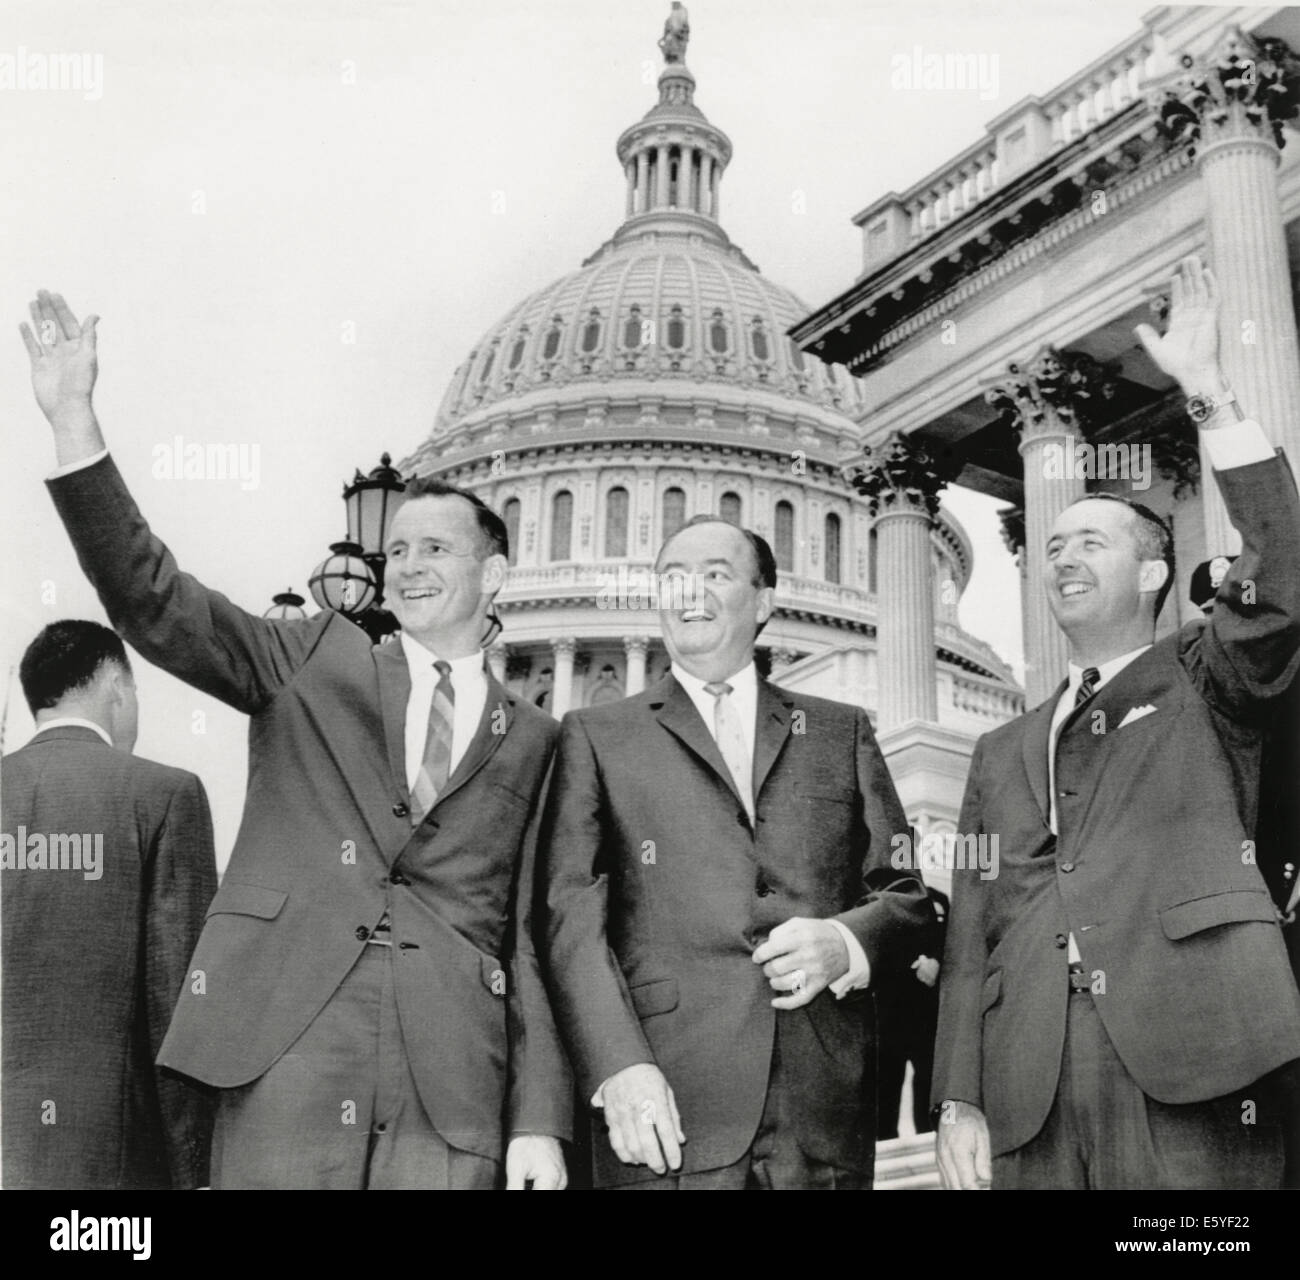 Gli astronauti Edward II bianco (L) e James McDivitt (R) CON GLI STATI UNITI VP Hubert Humphrey sui gradini di Capitol Building, USA, 1965 Foto Stock